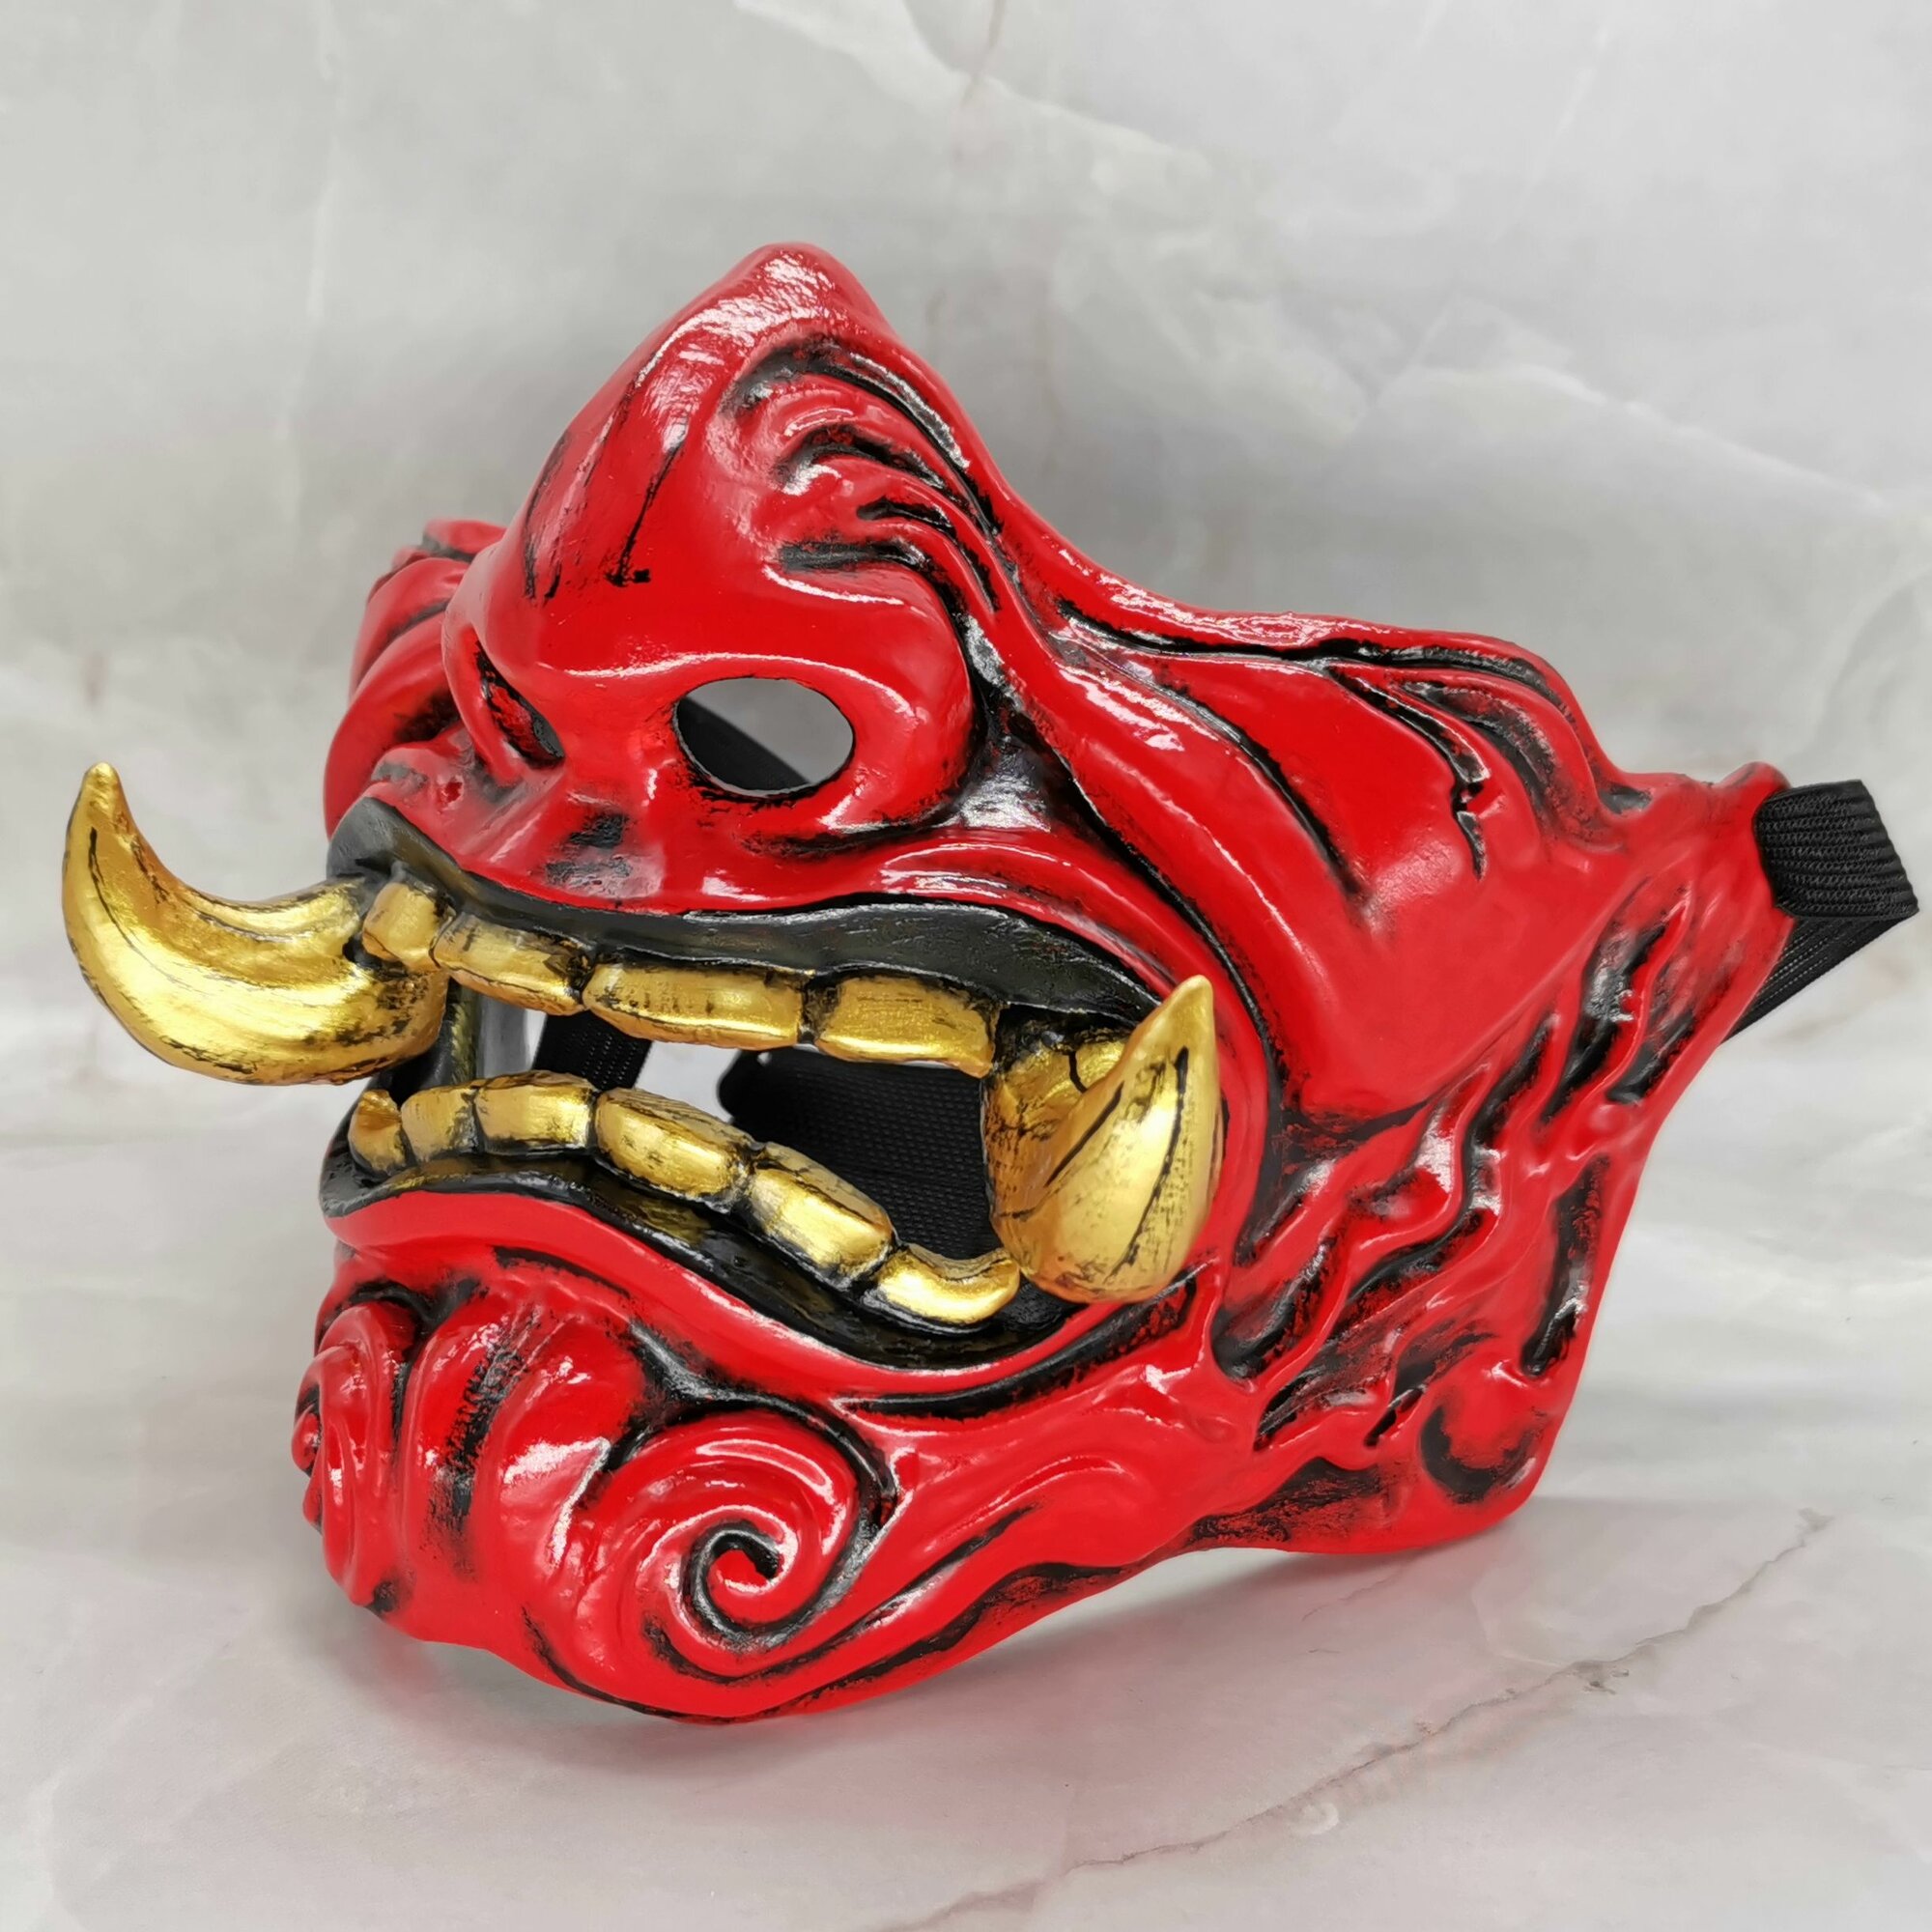 Маска японского Демона они (Oni) с клыками / Полумаска самурая на лицо.